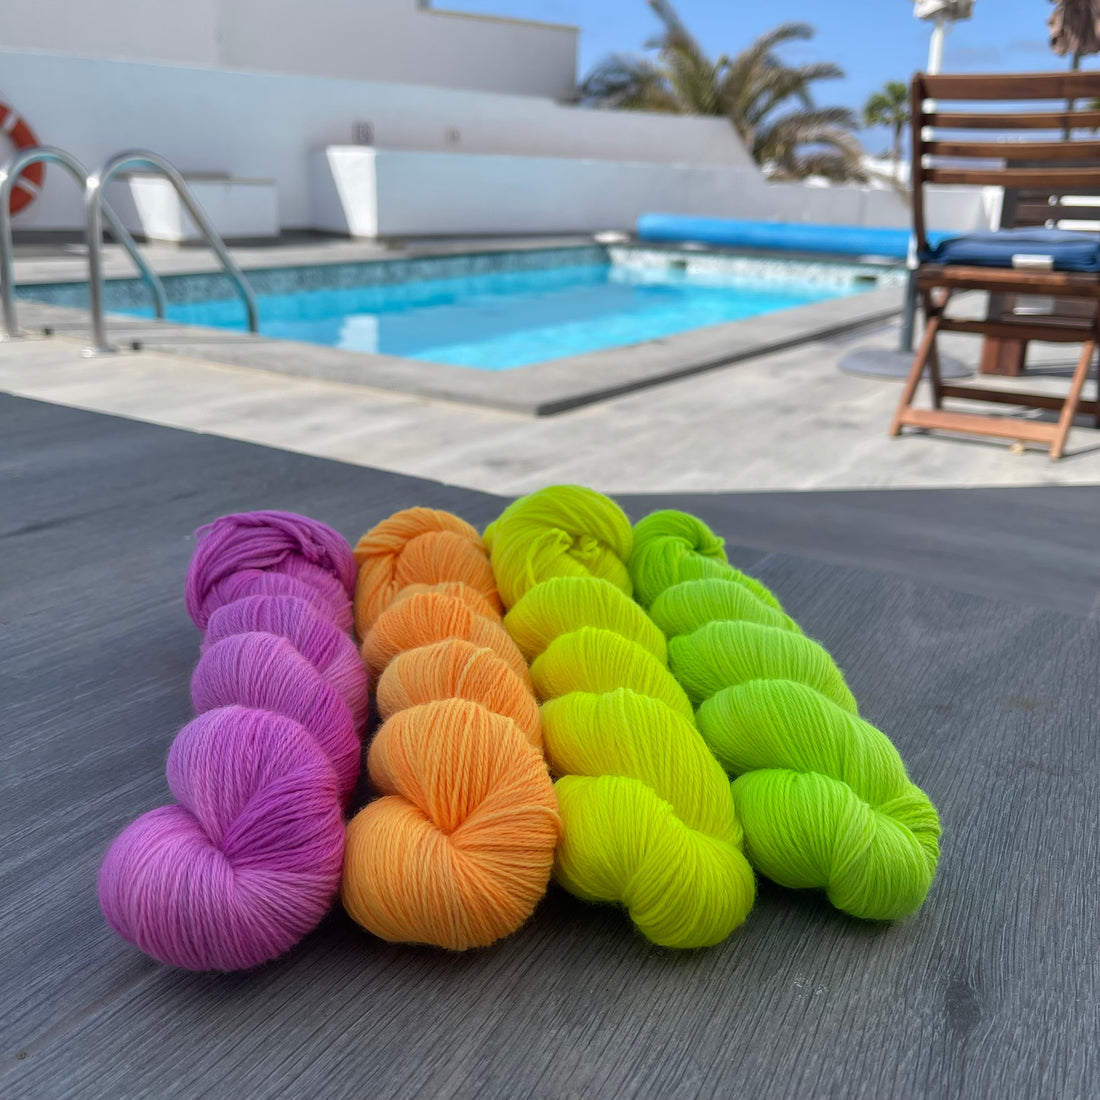 yarn sitting by the pool